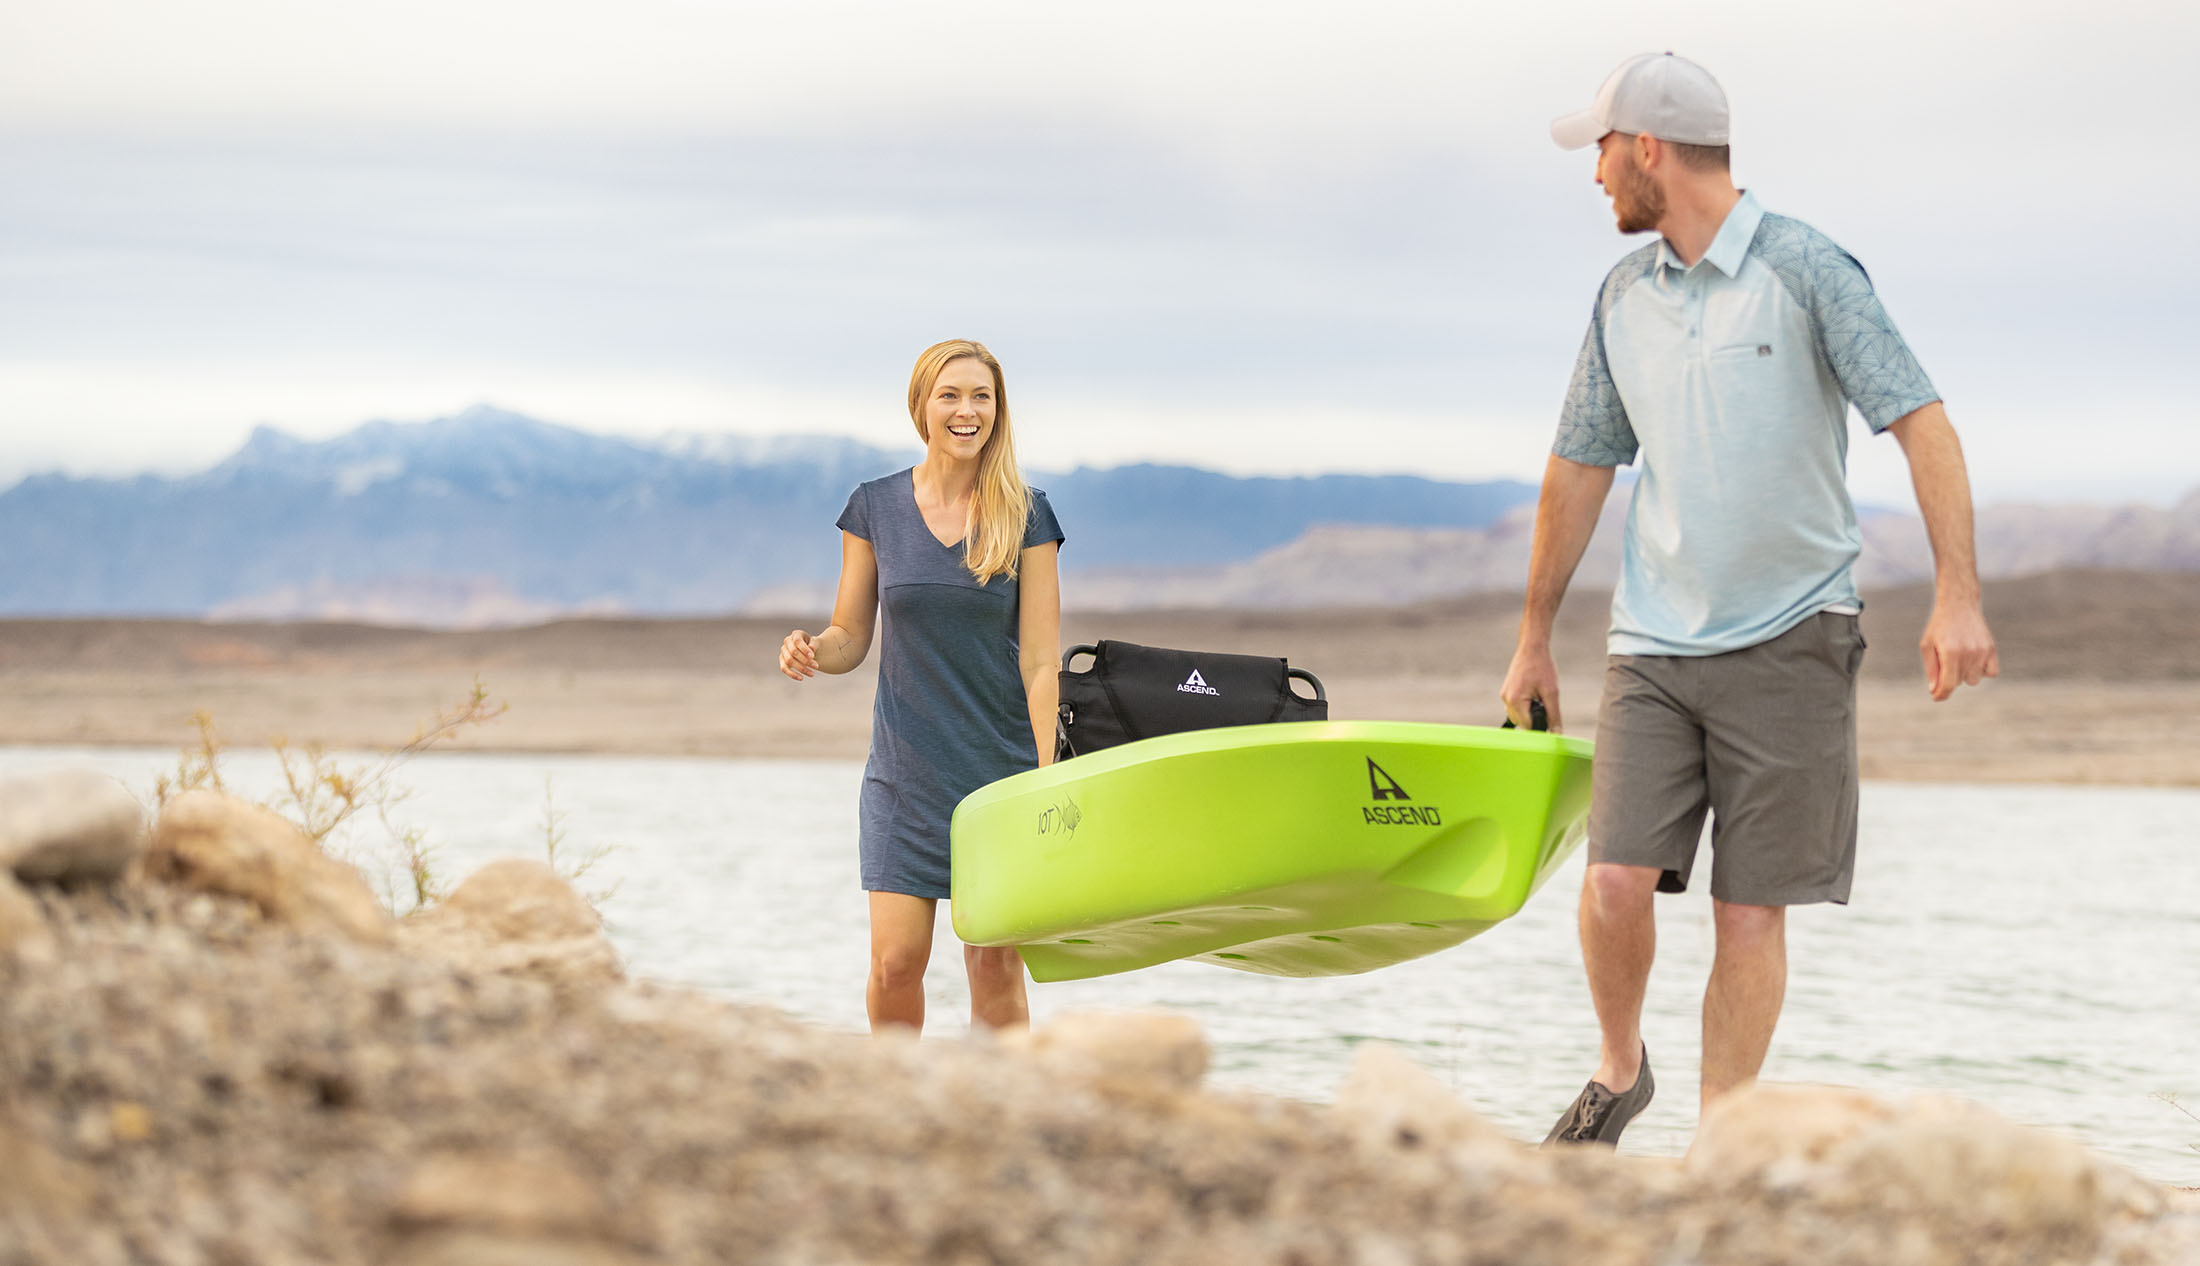 Choosing the best kayak